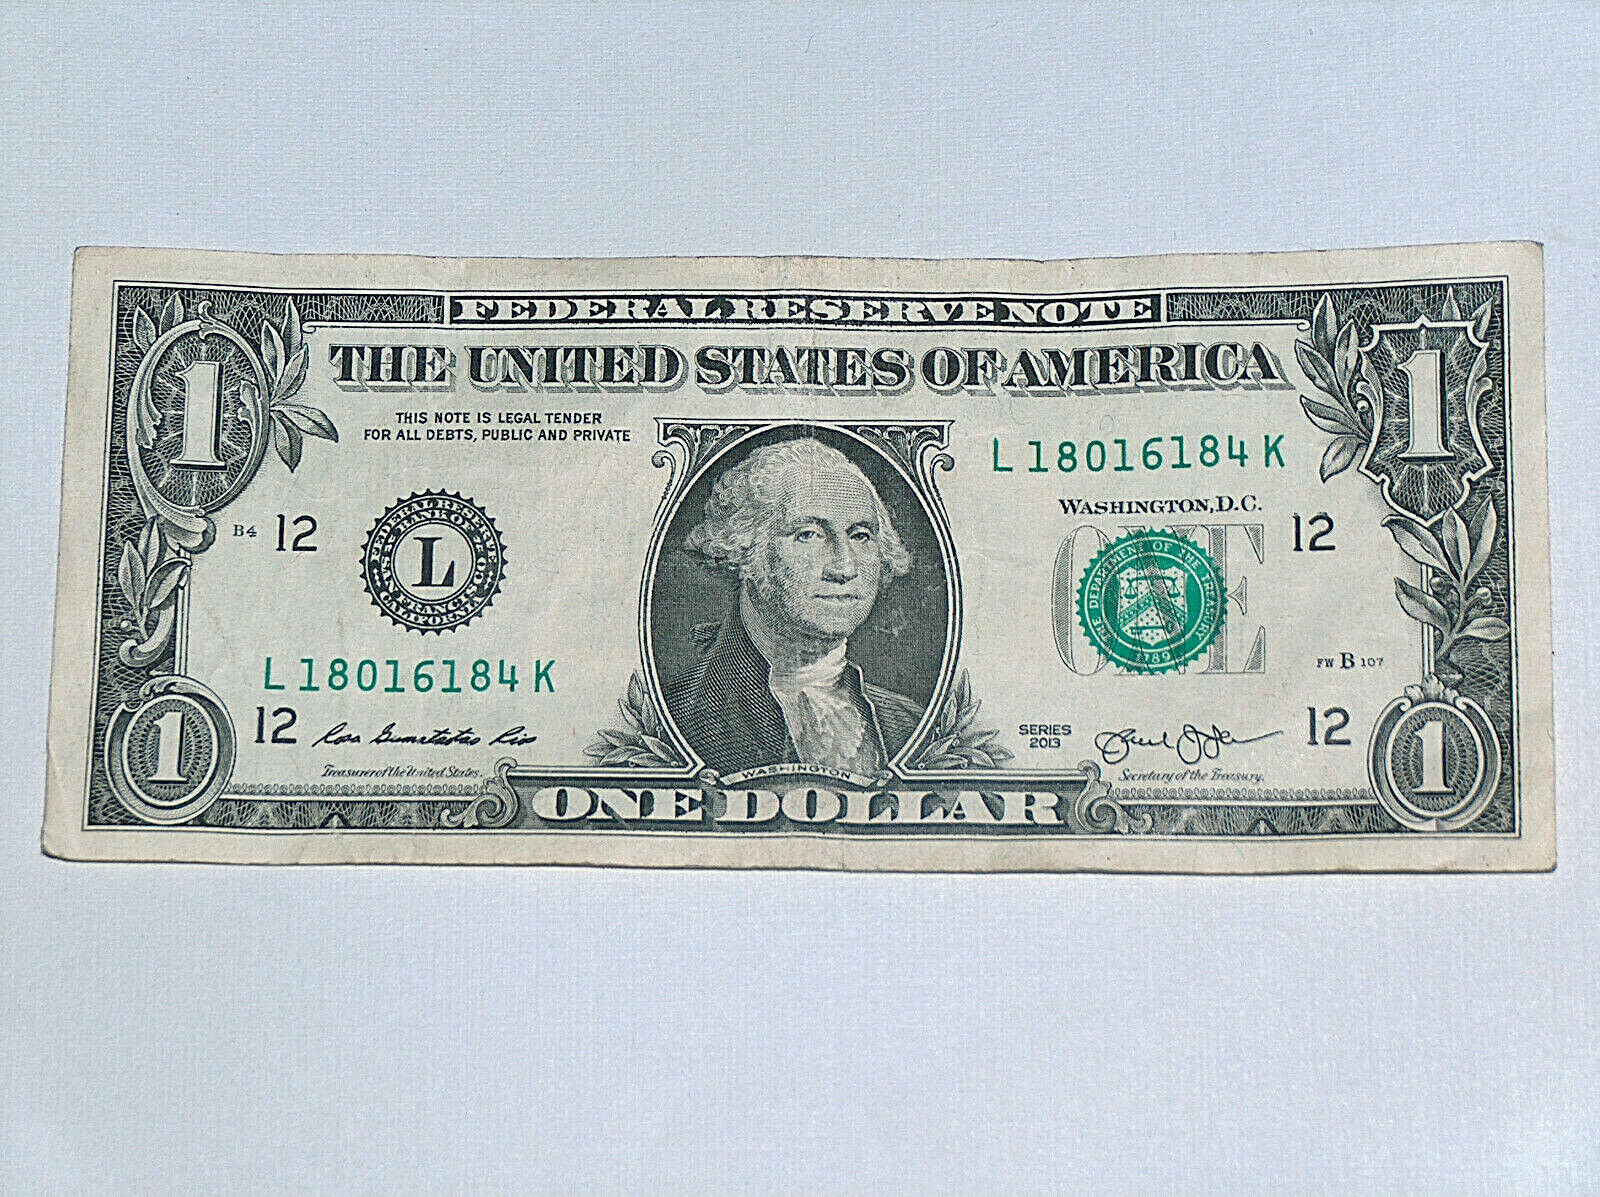 1 вопрос 1 доллар. Американская купюра 1 доллар. Банкнота США 1 доллар 1999. Обратная сторона долларовой купюры. 1 Долларовая купюра.